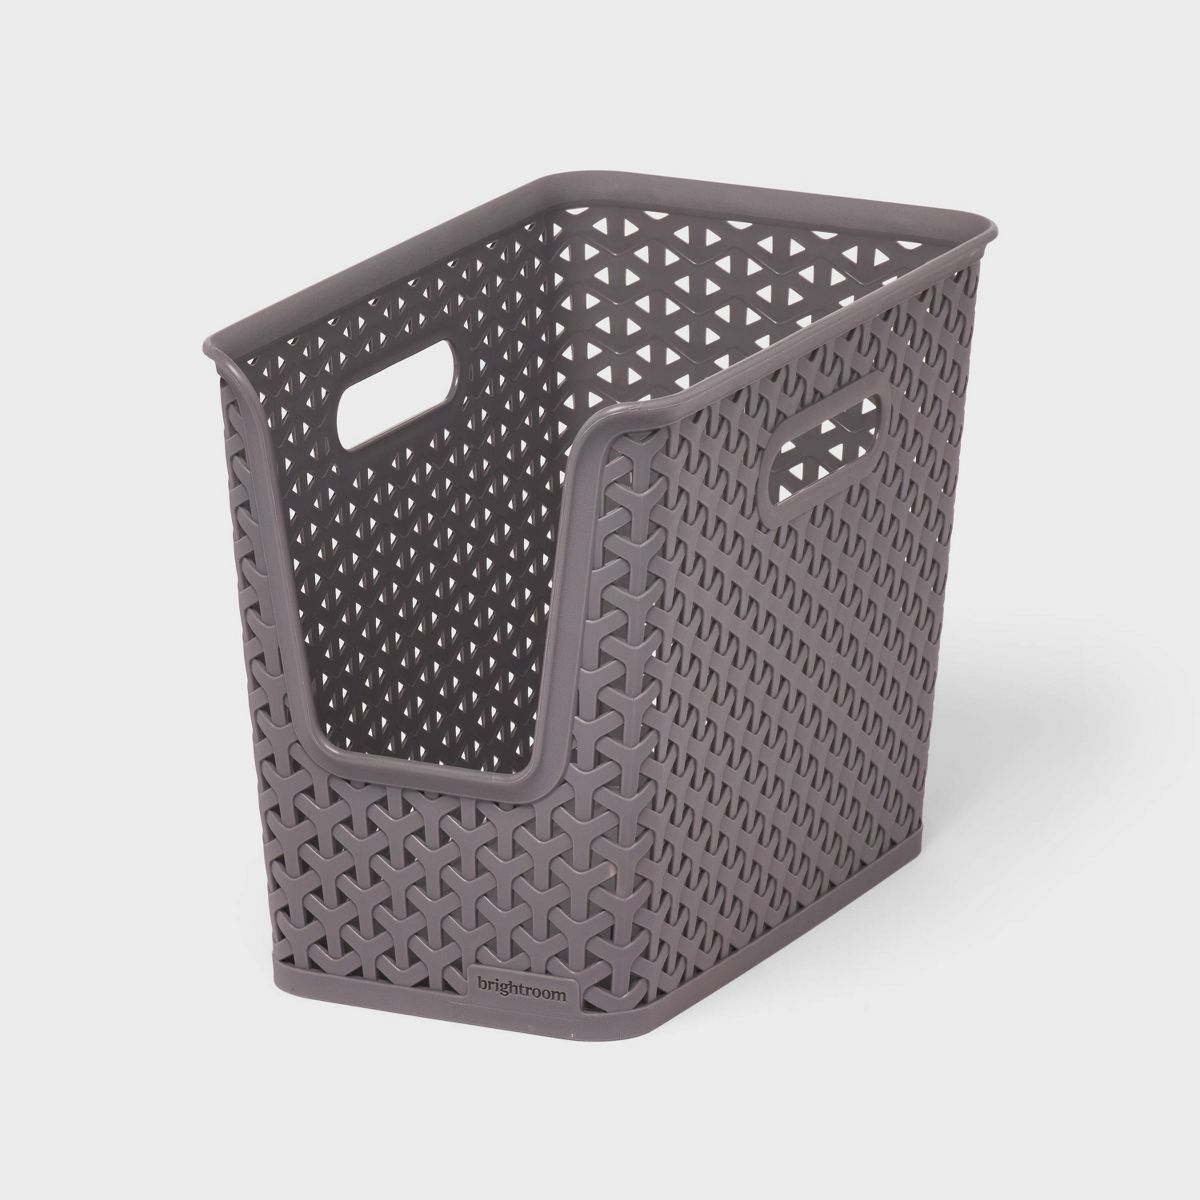 Y-Weave Narrow Easy Access Decorative Storage Basket Gray - Brightroom™ | Target